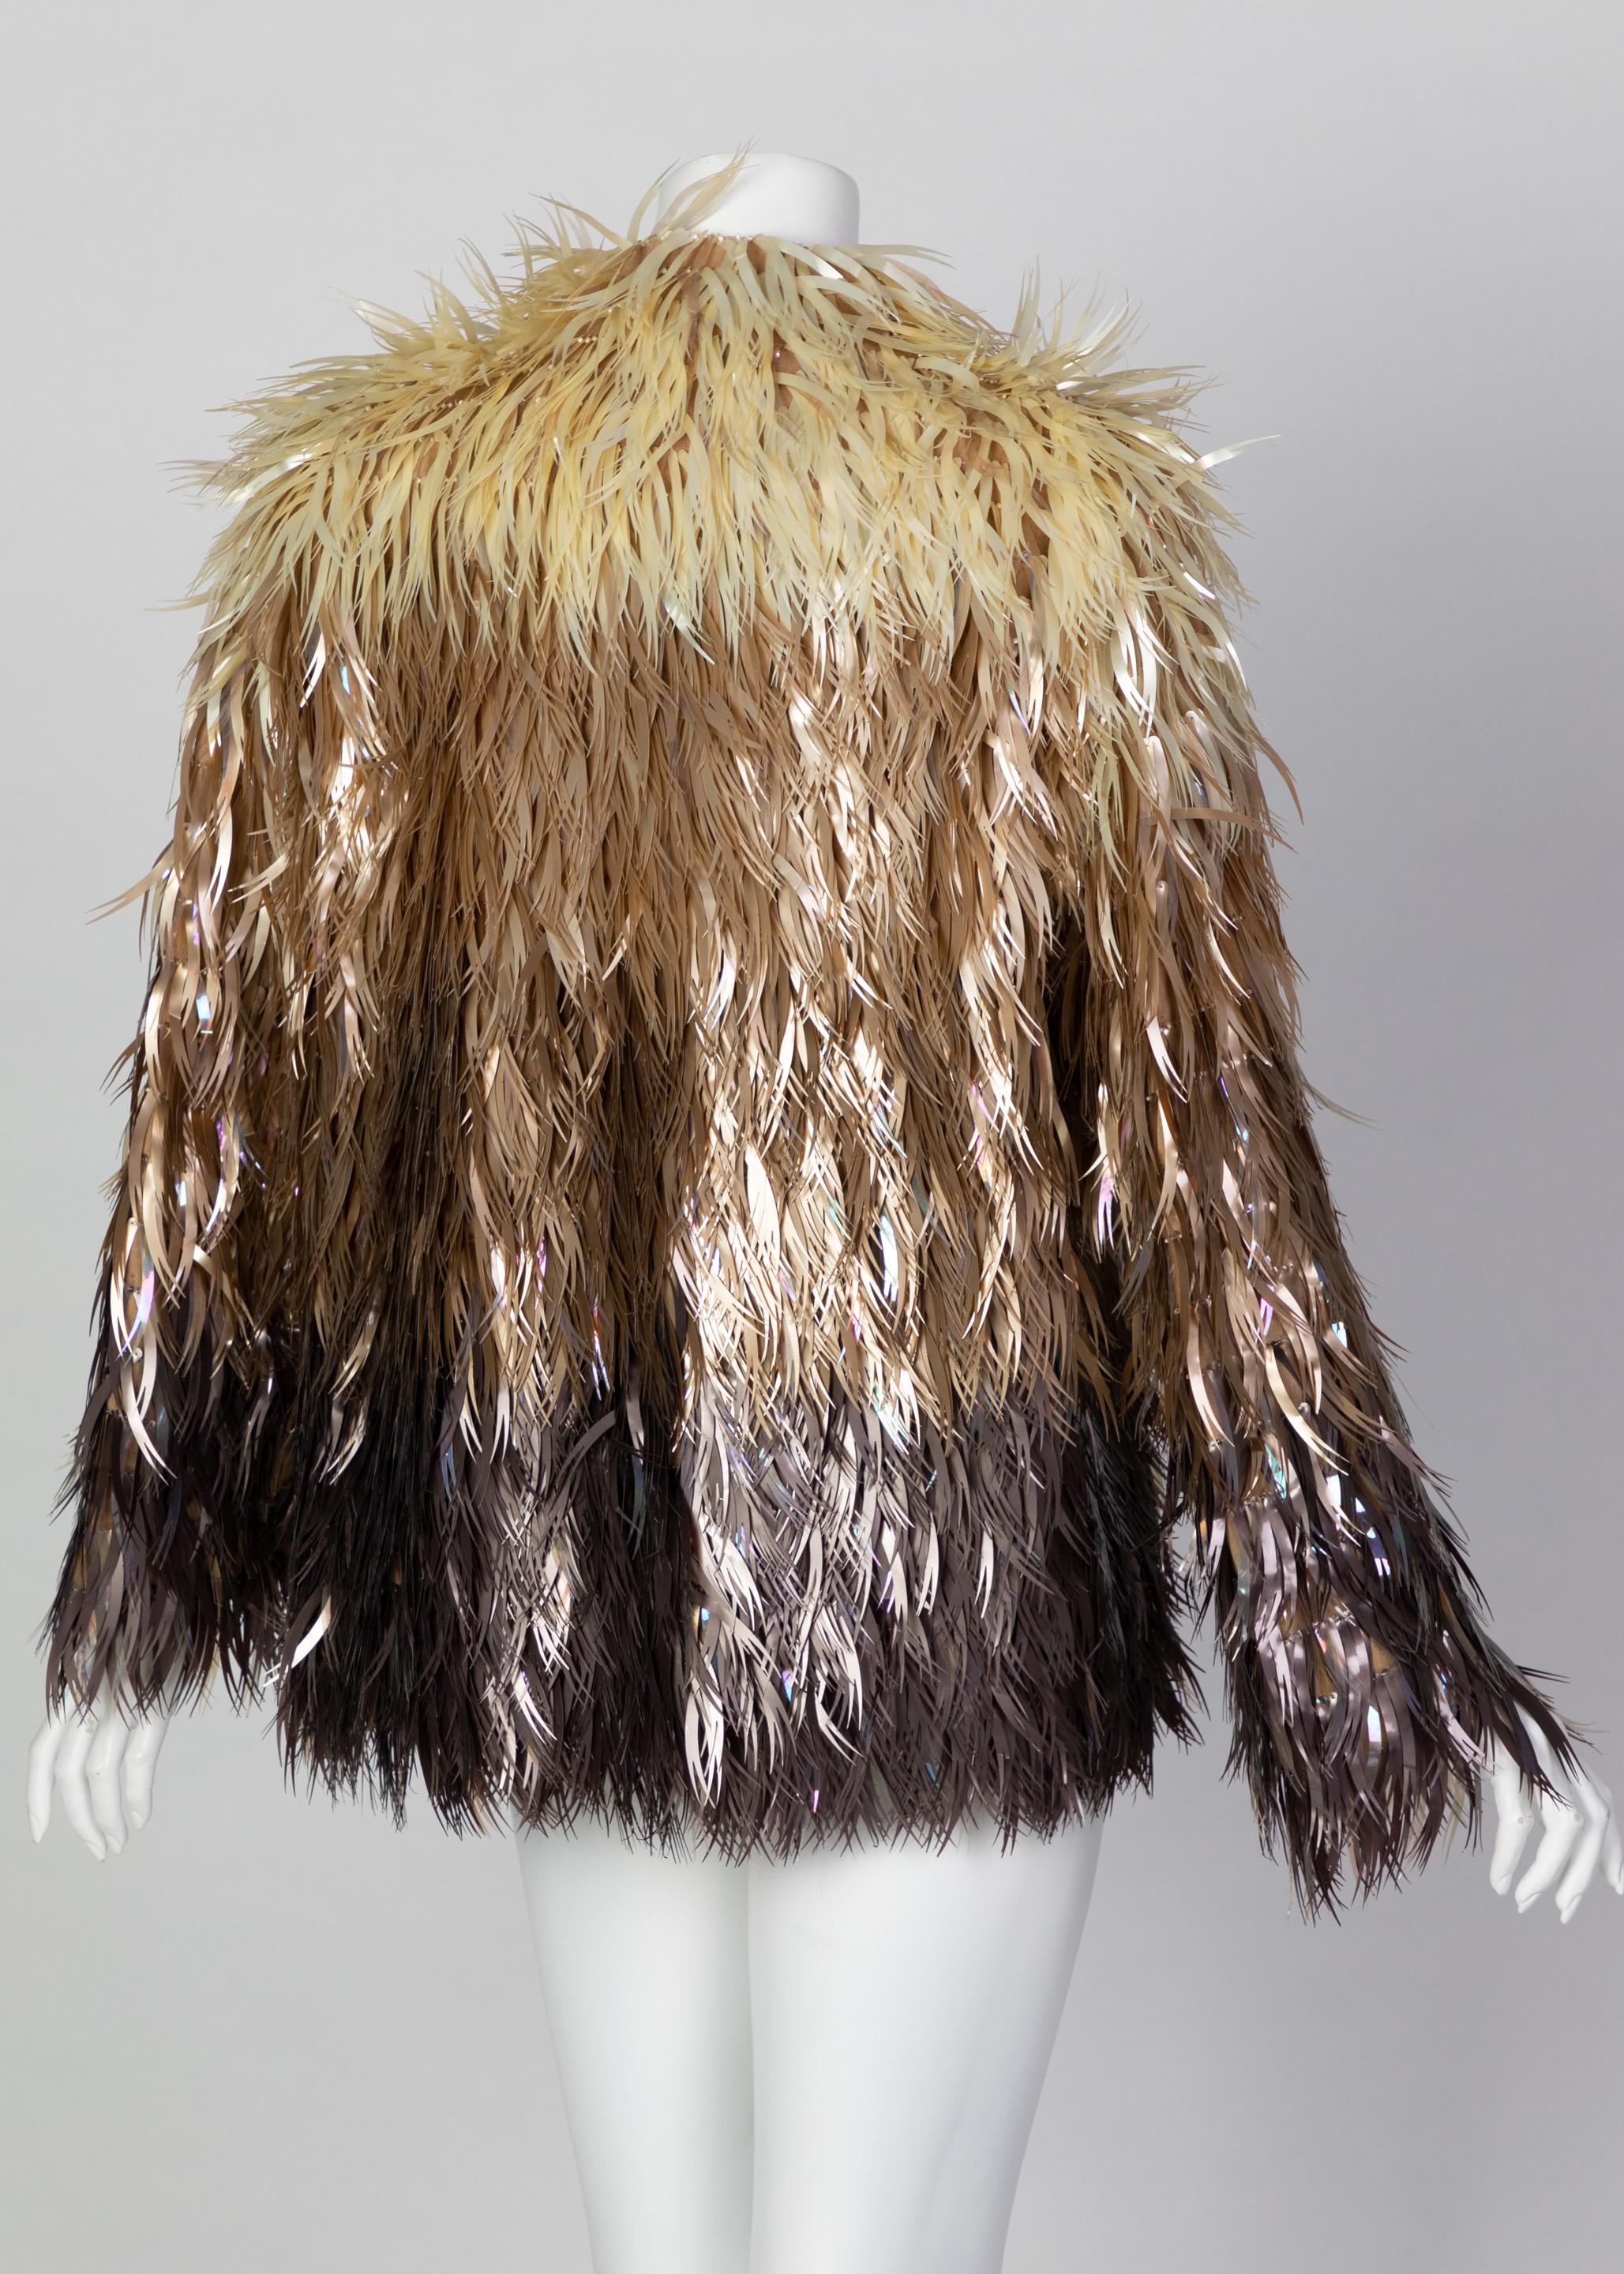 Chloé Stella McCartney - Manteau en plumes végétales, plastique et métal, défilé A/H 2000 en vente 1